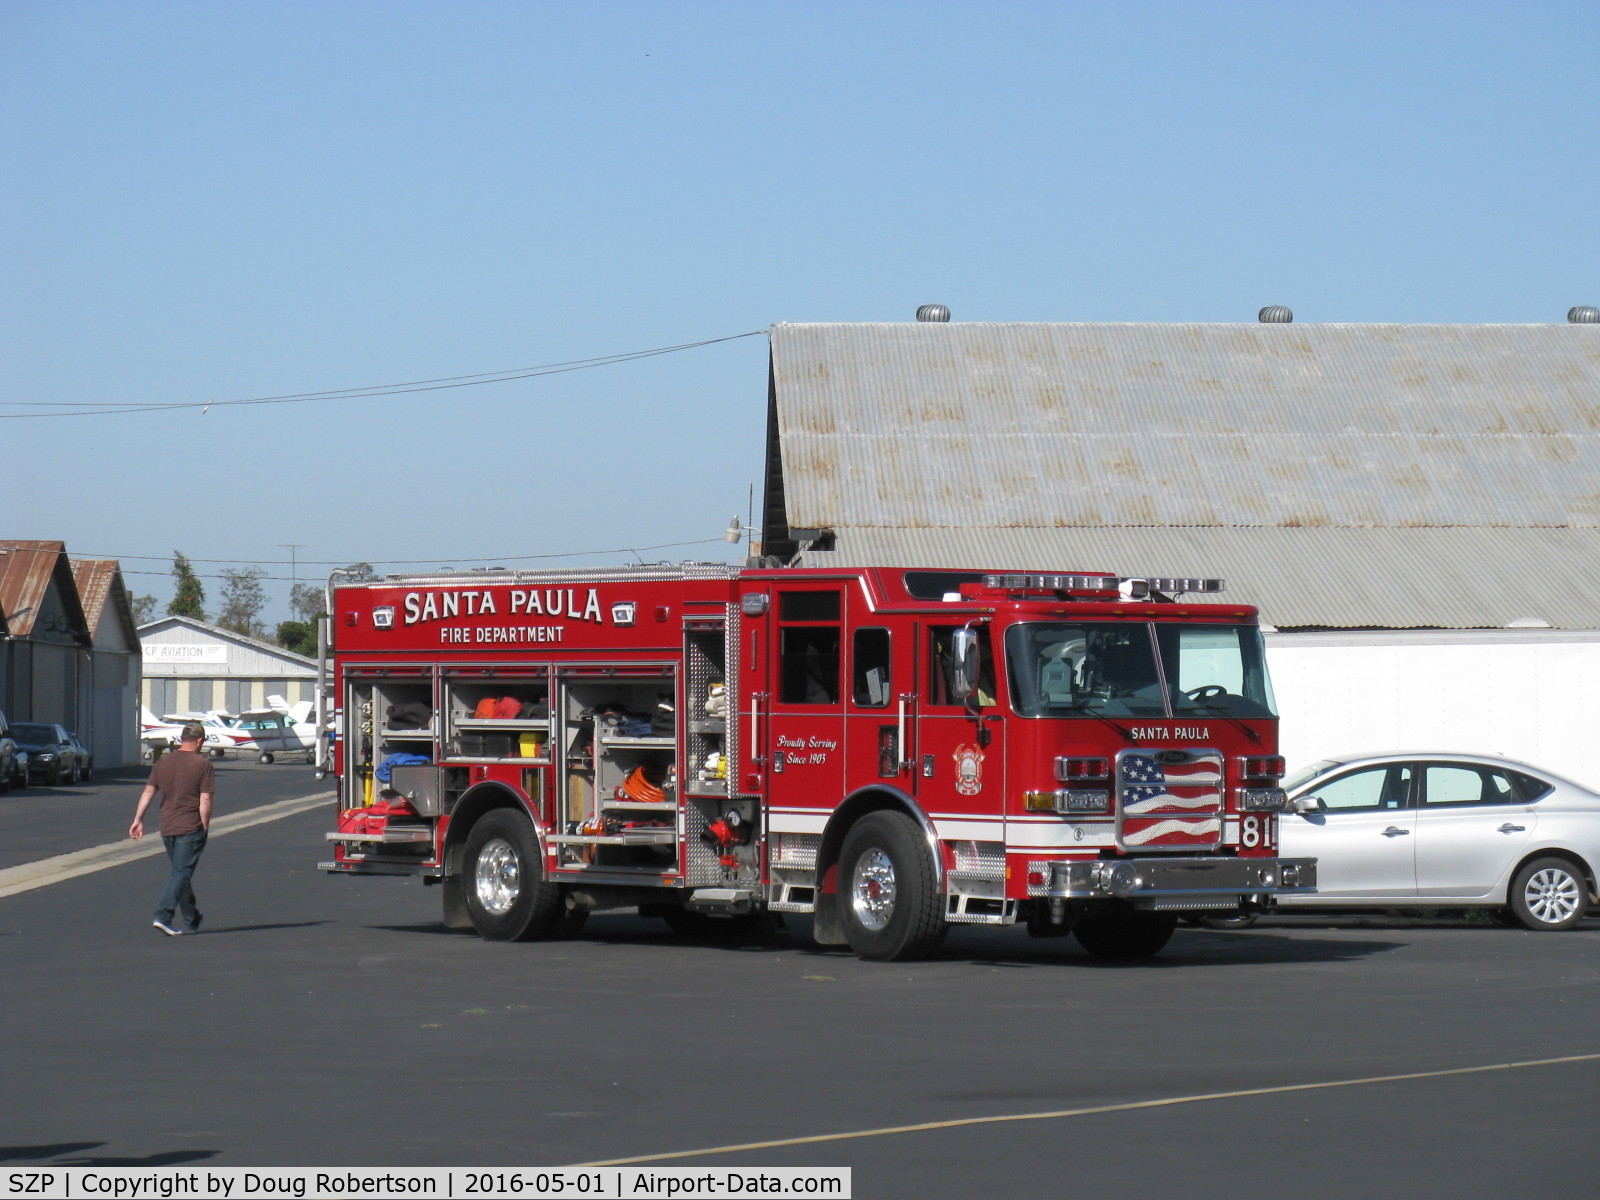 Santa Paula Airport (SZP) - Santa Paula Fire Department vehicle